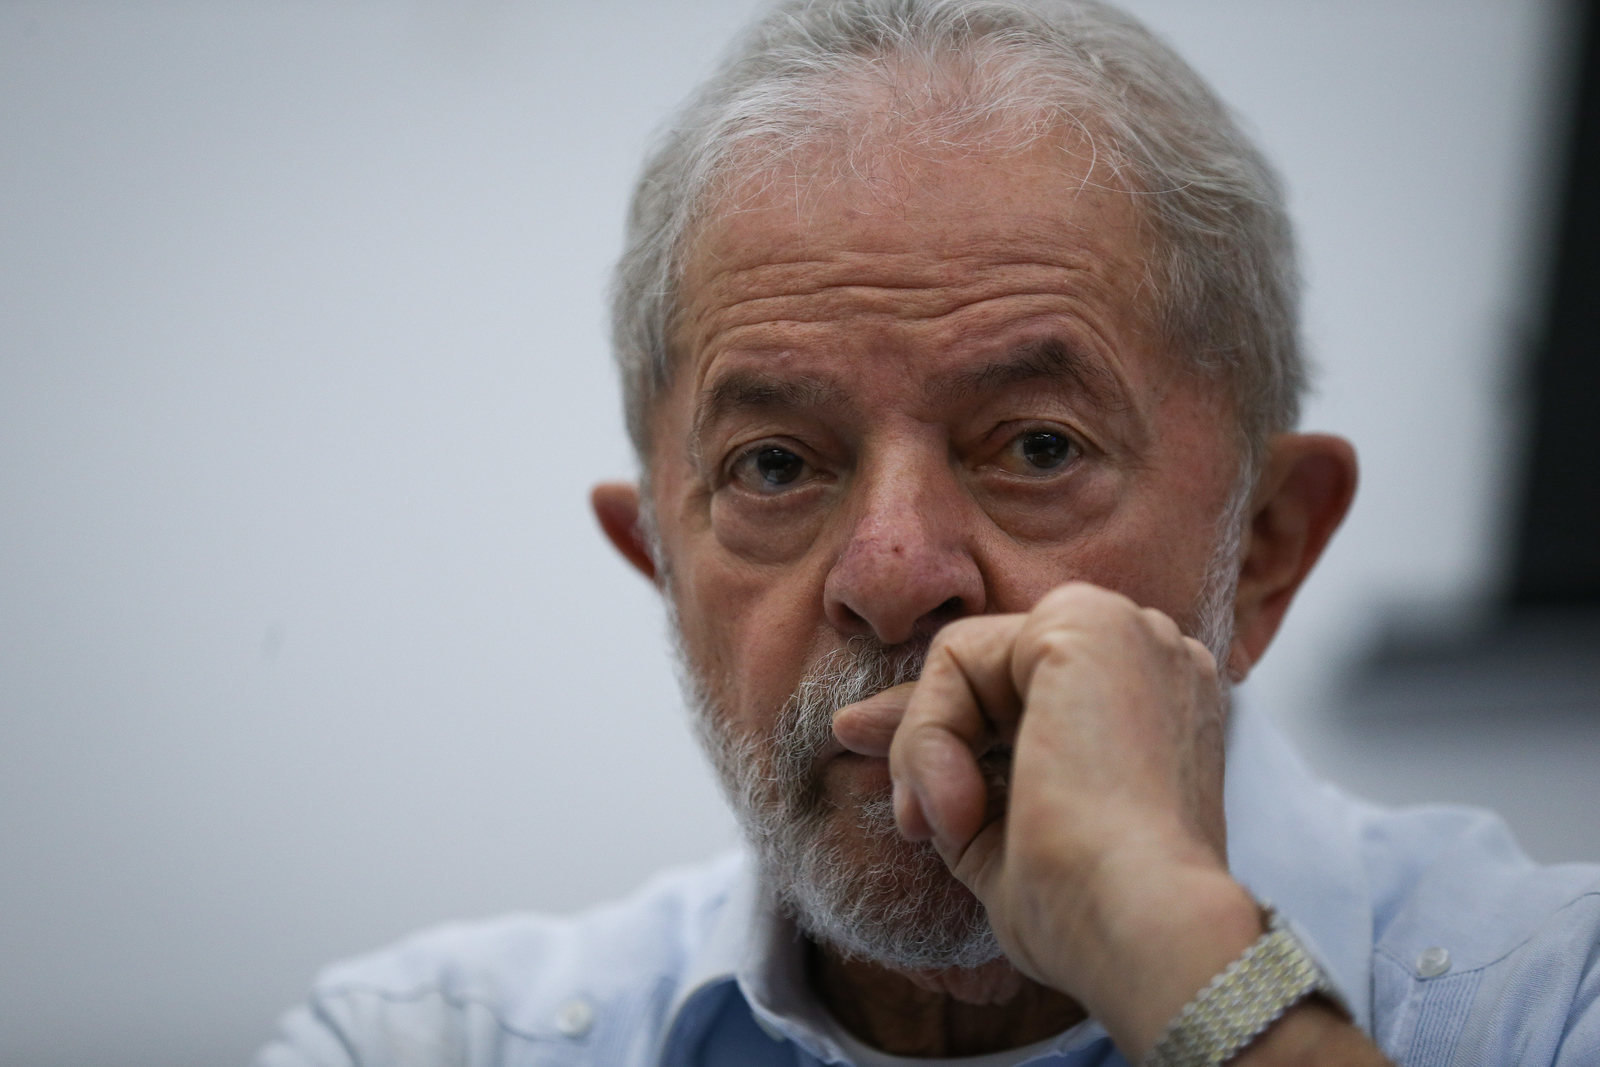 ***FOTO DE ARQUIVO***SÃO PAULO, SP, 17.01.2020 - O ex-presidente Lula durante reunião do diretório nacional do PT (Partido dos Trabalhadores), em São Paulo. (Foto: Zanone Fraissat/Folhapress)